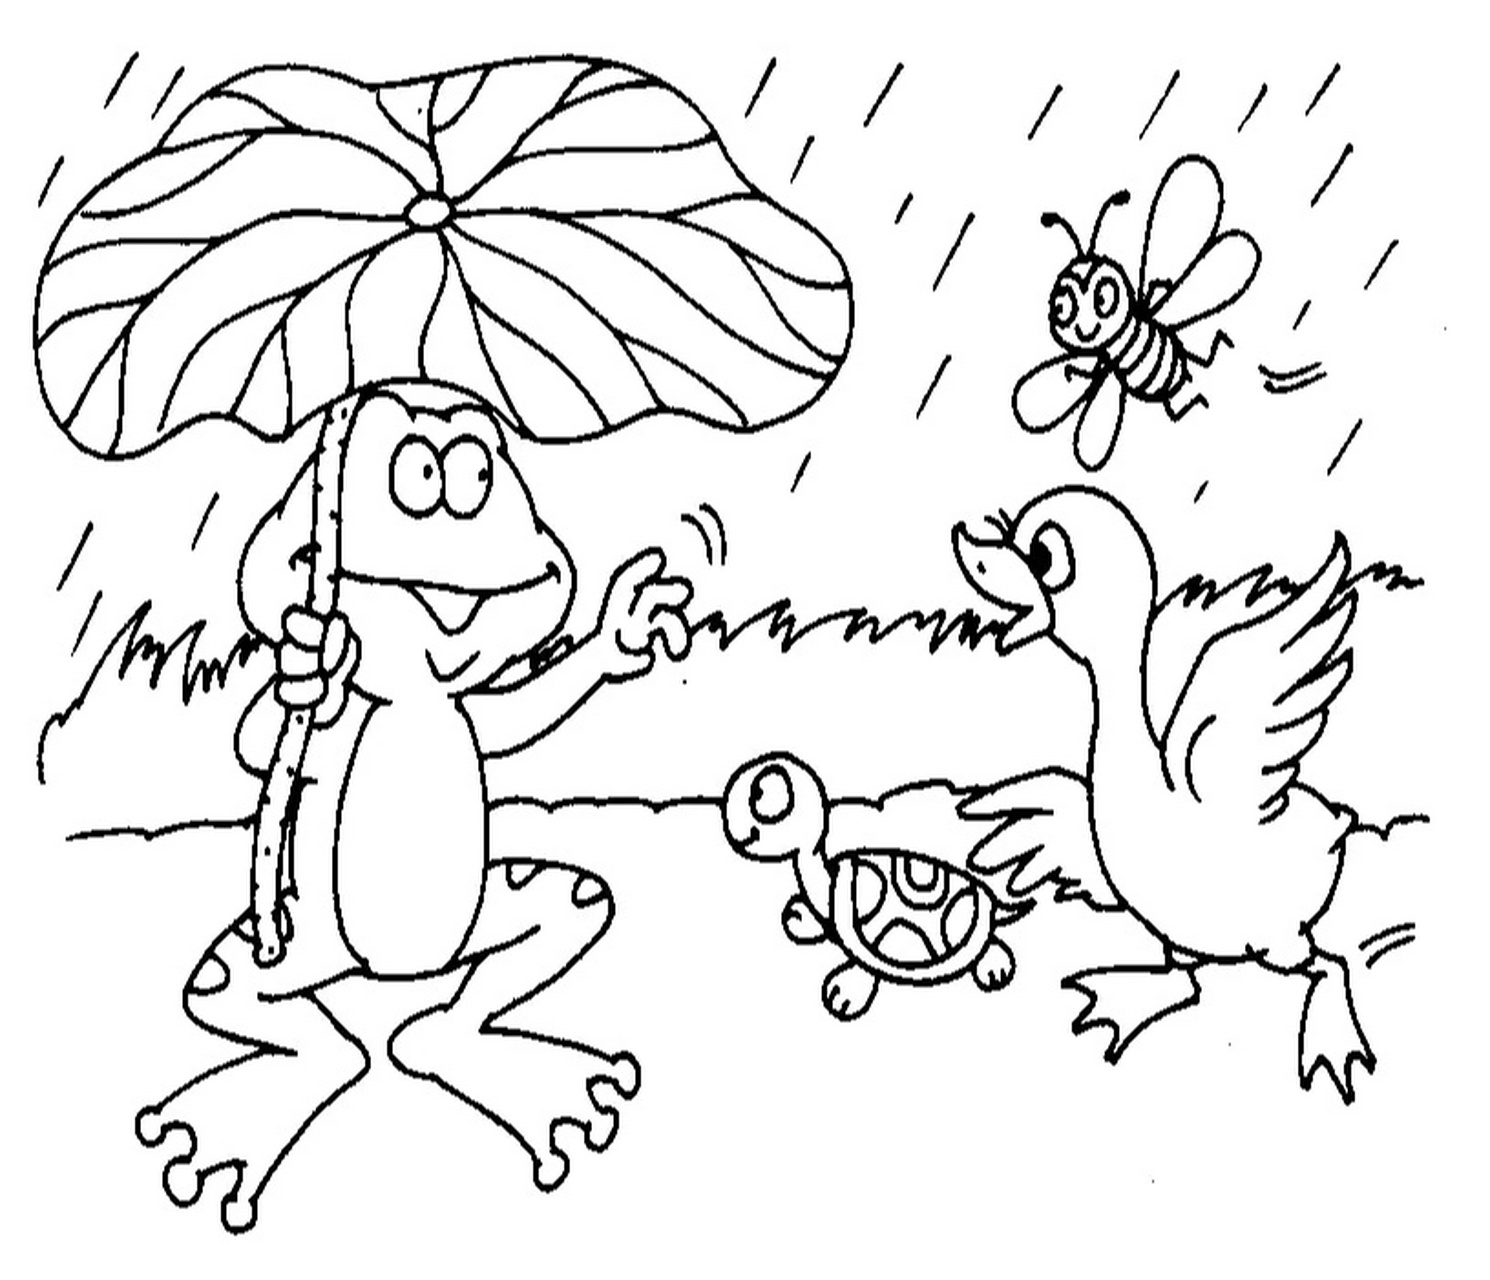 看图写话 青蛙的荷叶伞 周末,天气晴朗,青蛙和小乌龟,白鹅,还有小蜜蜂